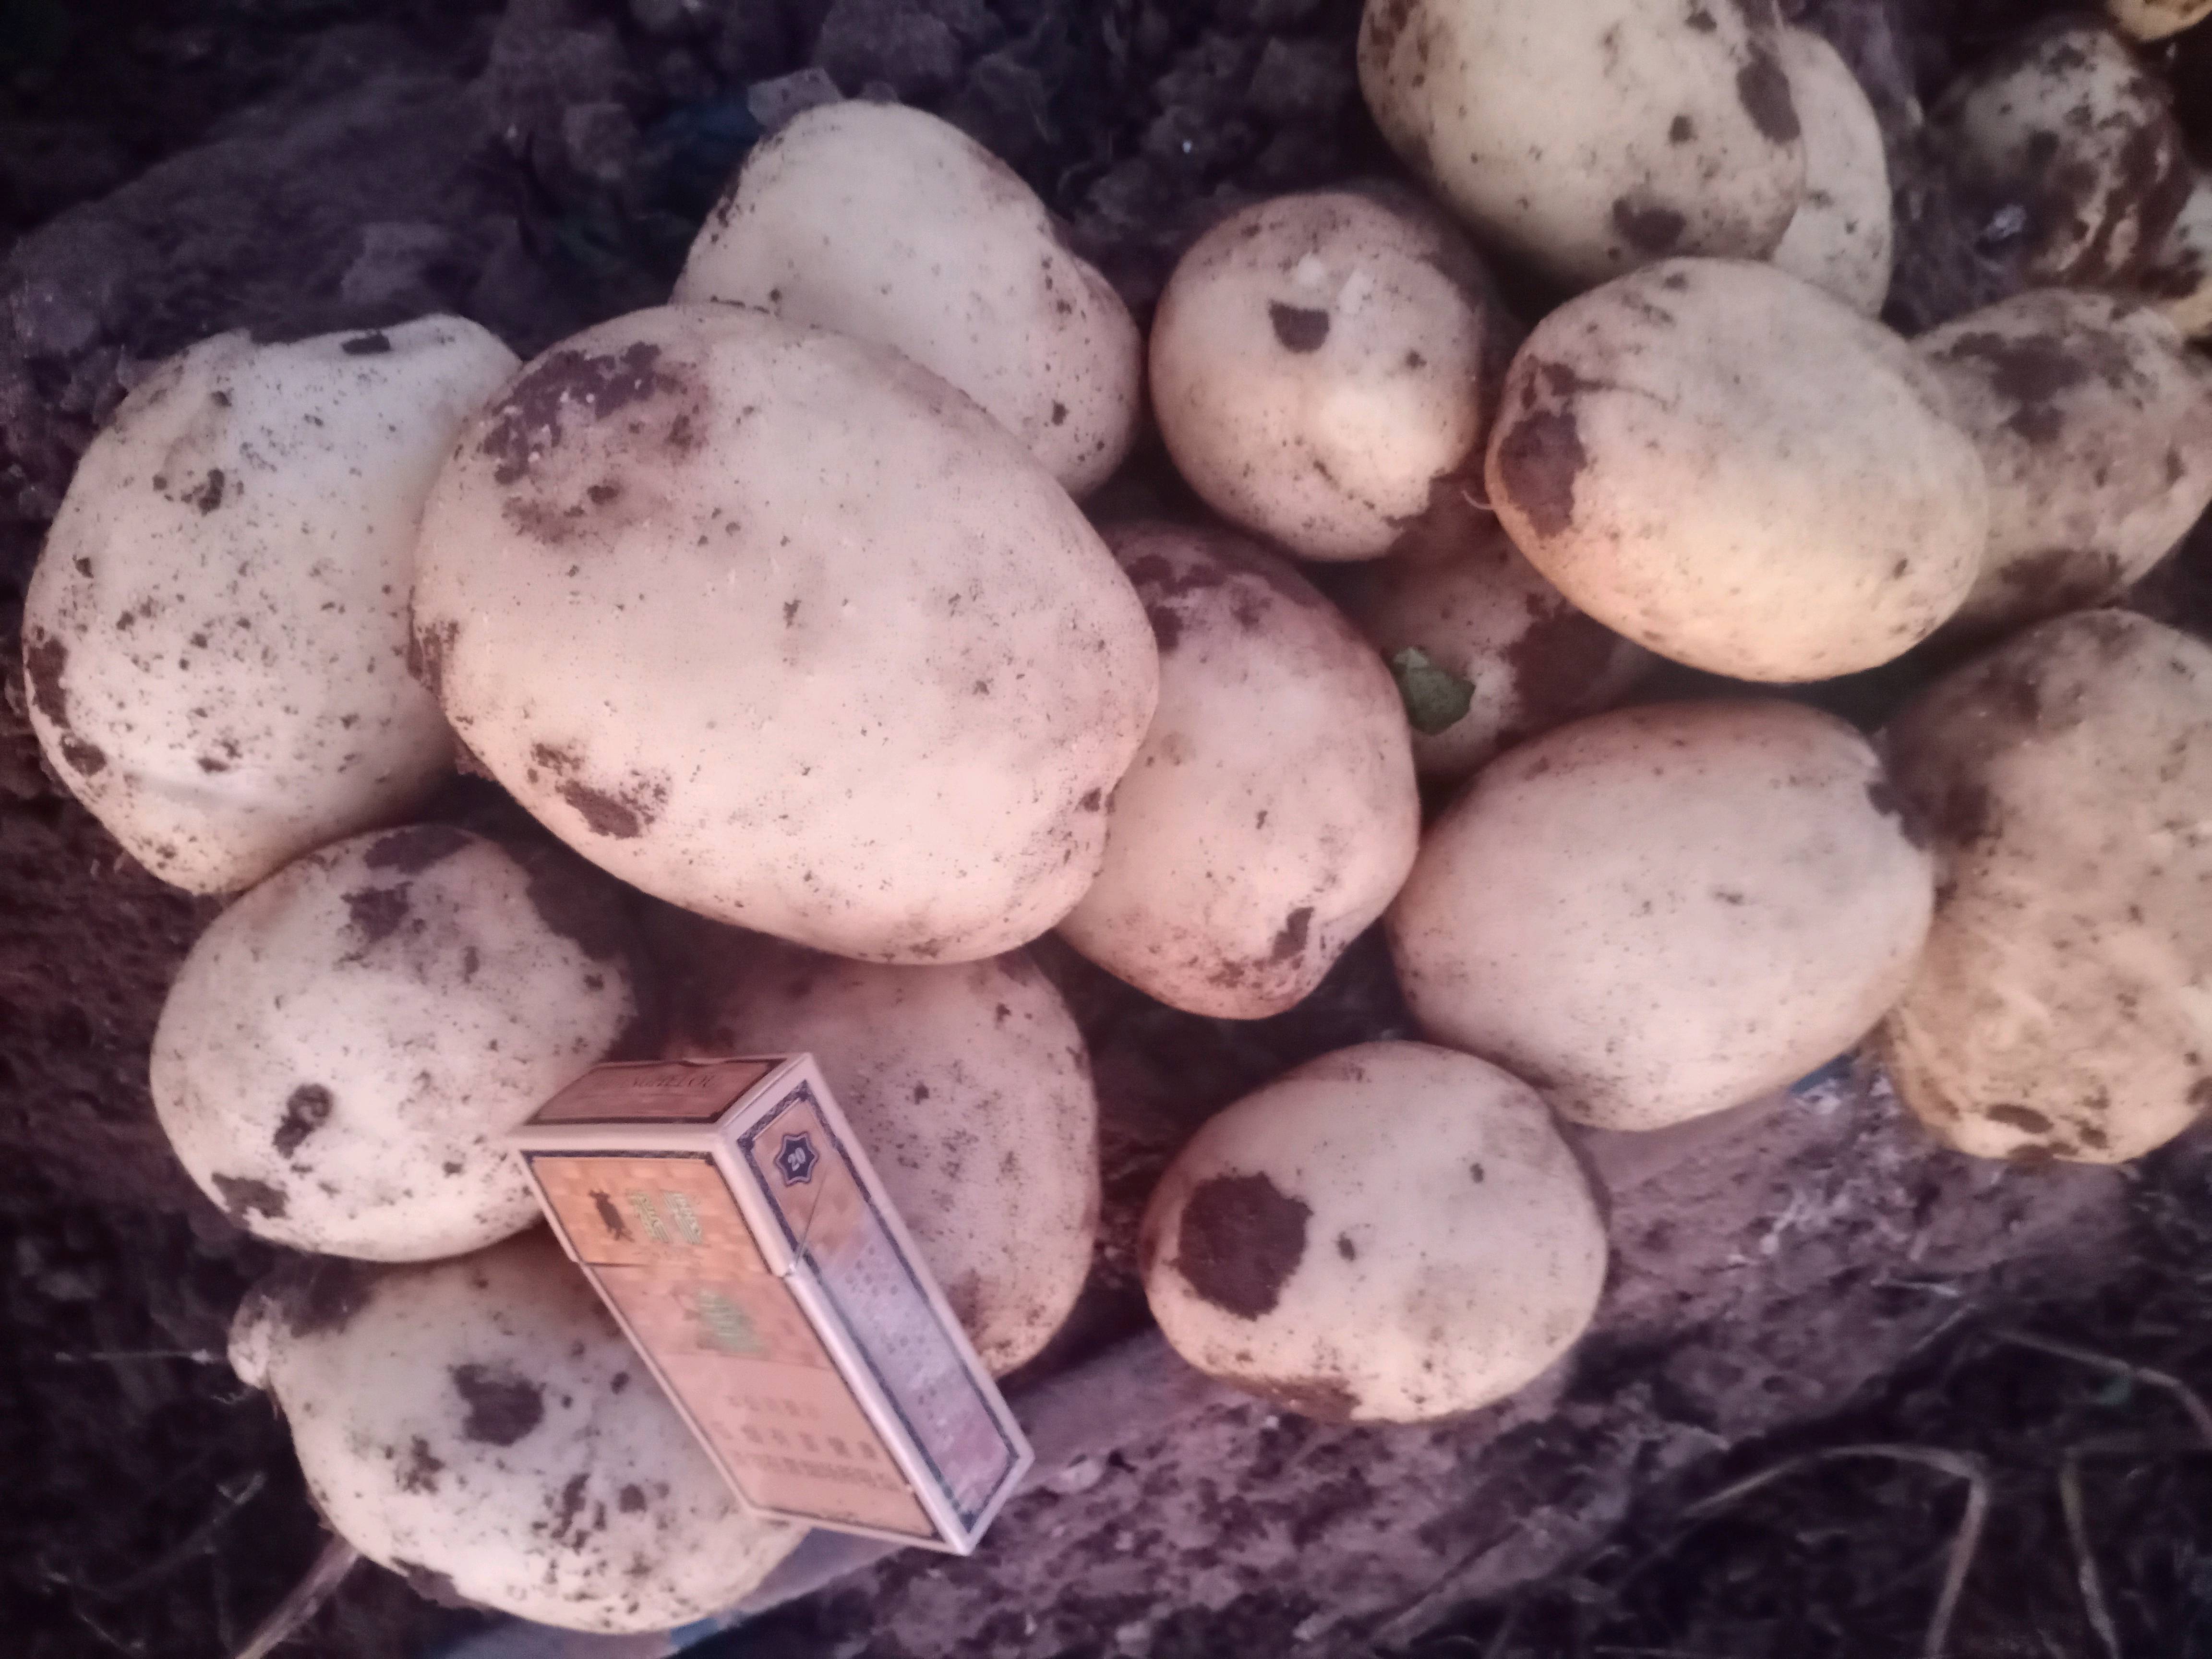 精品白心土豆:主营白心226、228、v8和丽薯6号。质量可靠诚信交易。